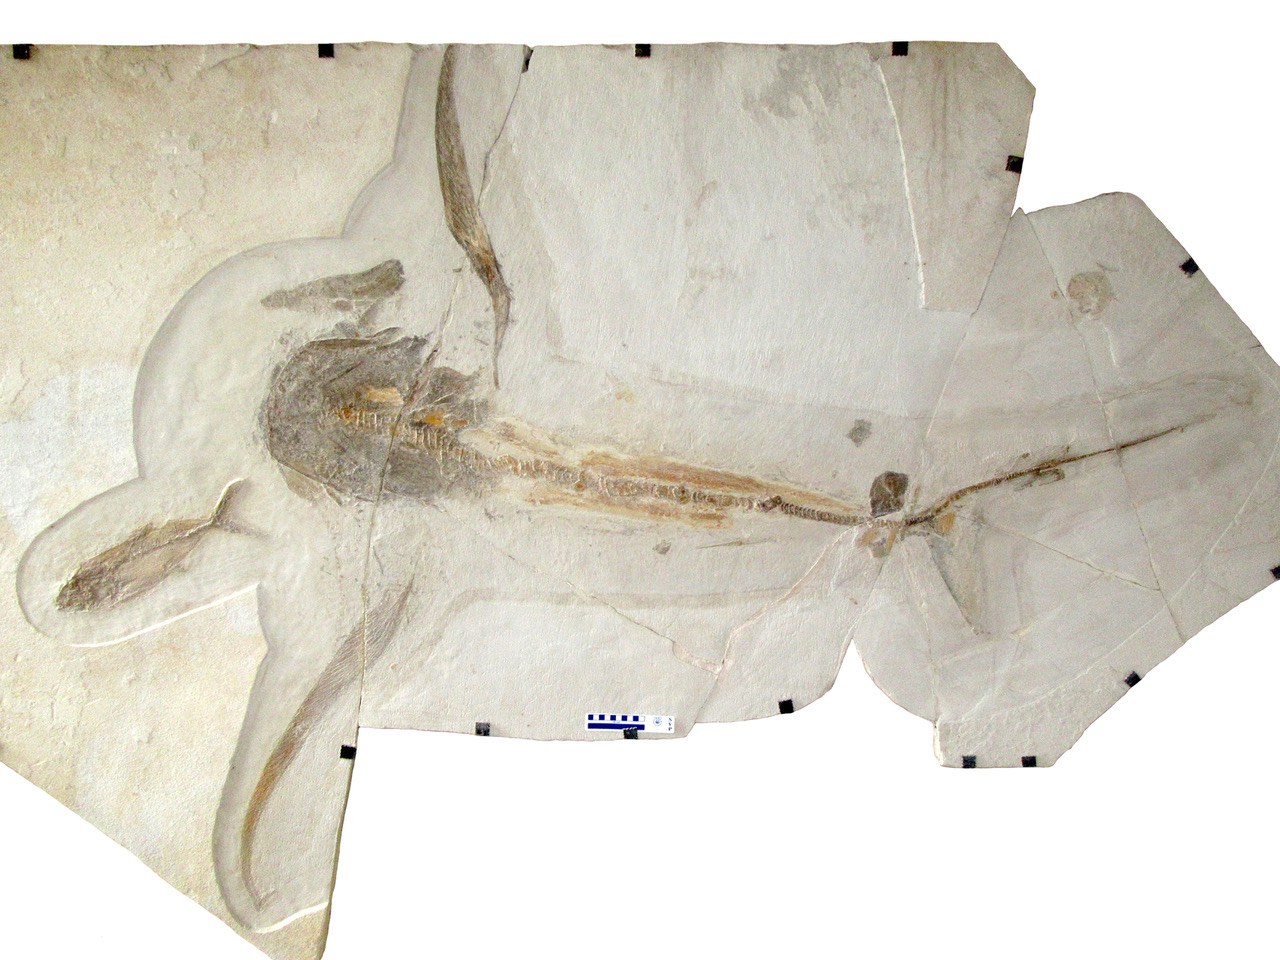 Der neu entdeckte fossile Hai Aquilolamna milarcae